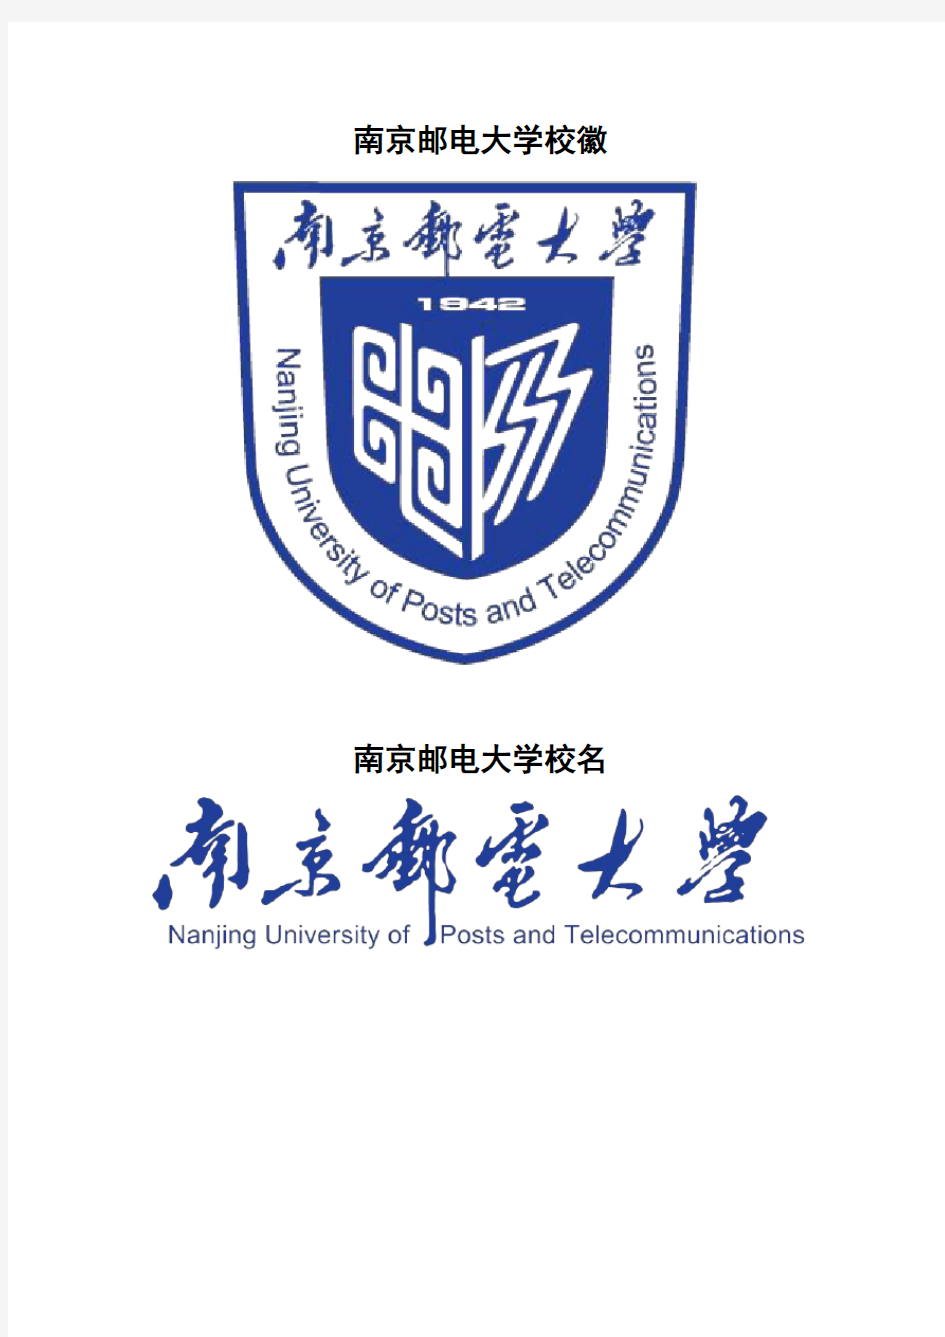 南京邮电大学校徽校标